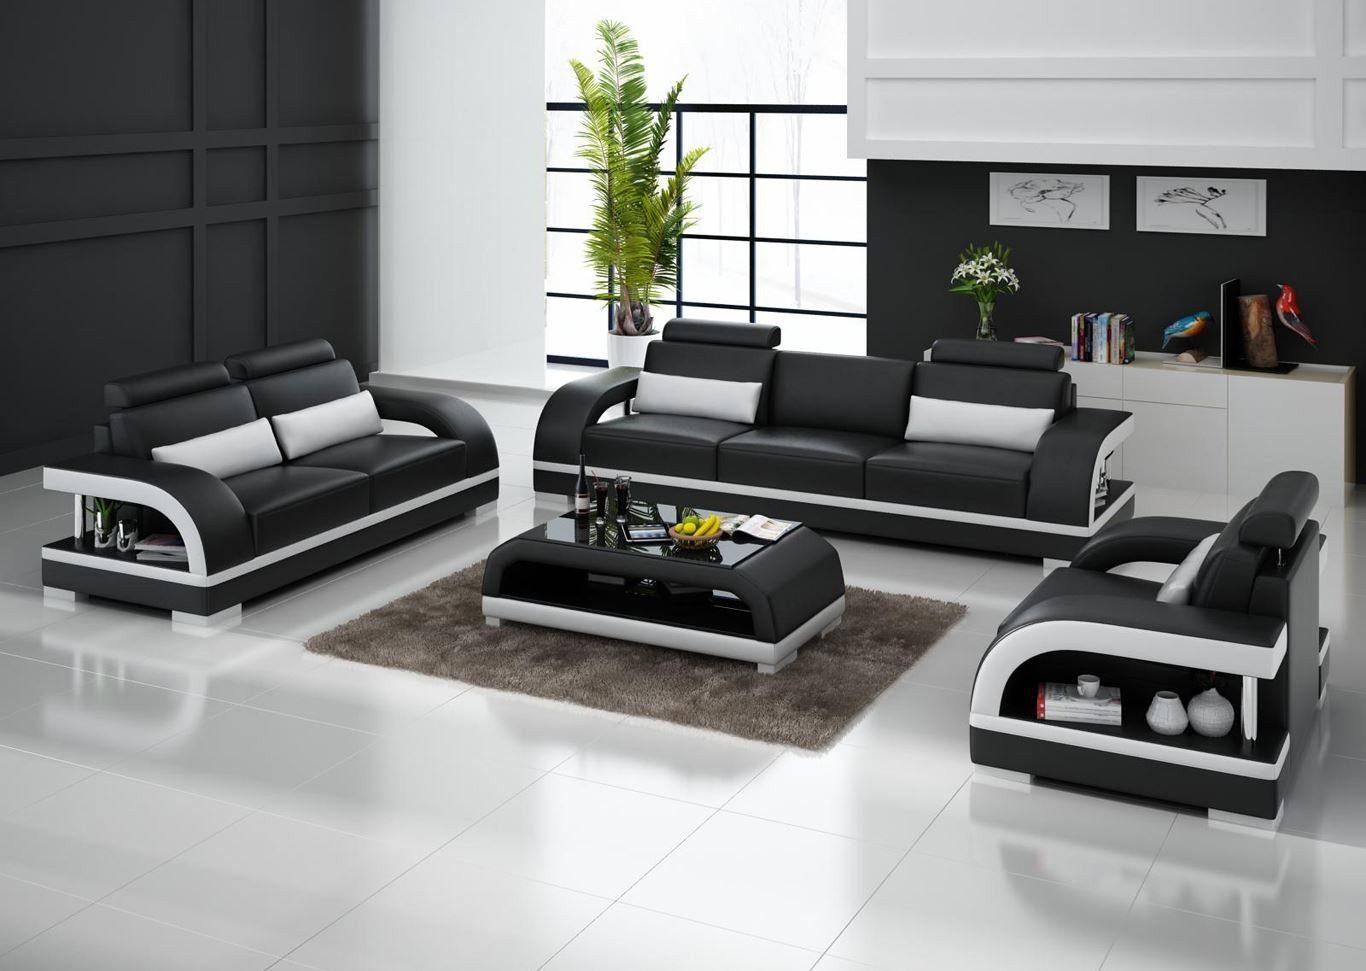 JVmoebel Sofa Moderne Weiße 3+2+1 Sogarnitur Luxus Polstermöbel Garnitur Neu, Made in Europe Schwarz